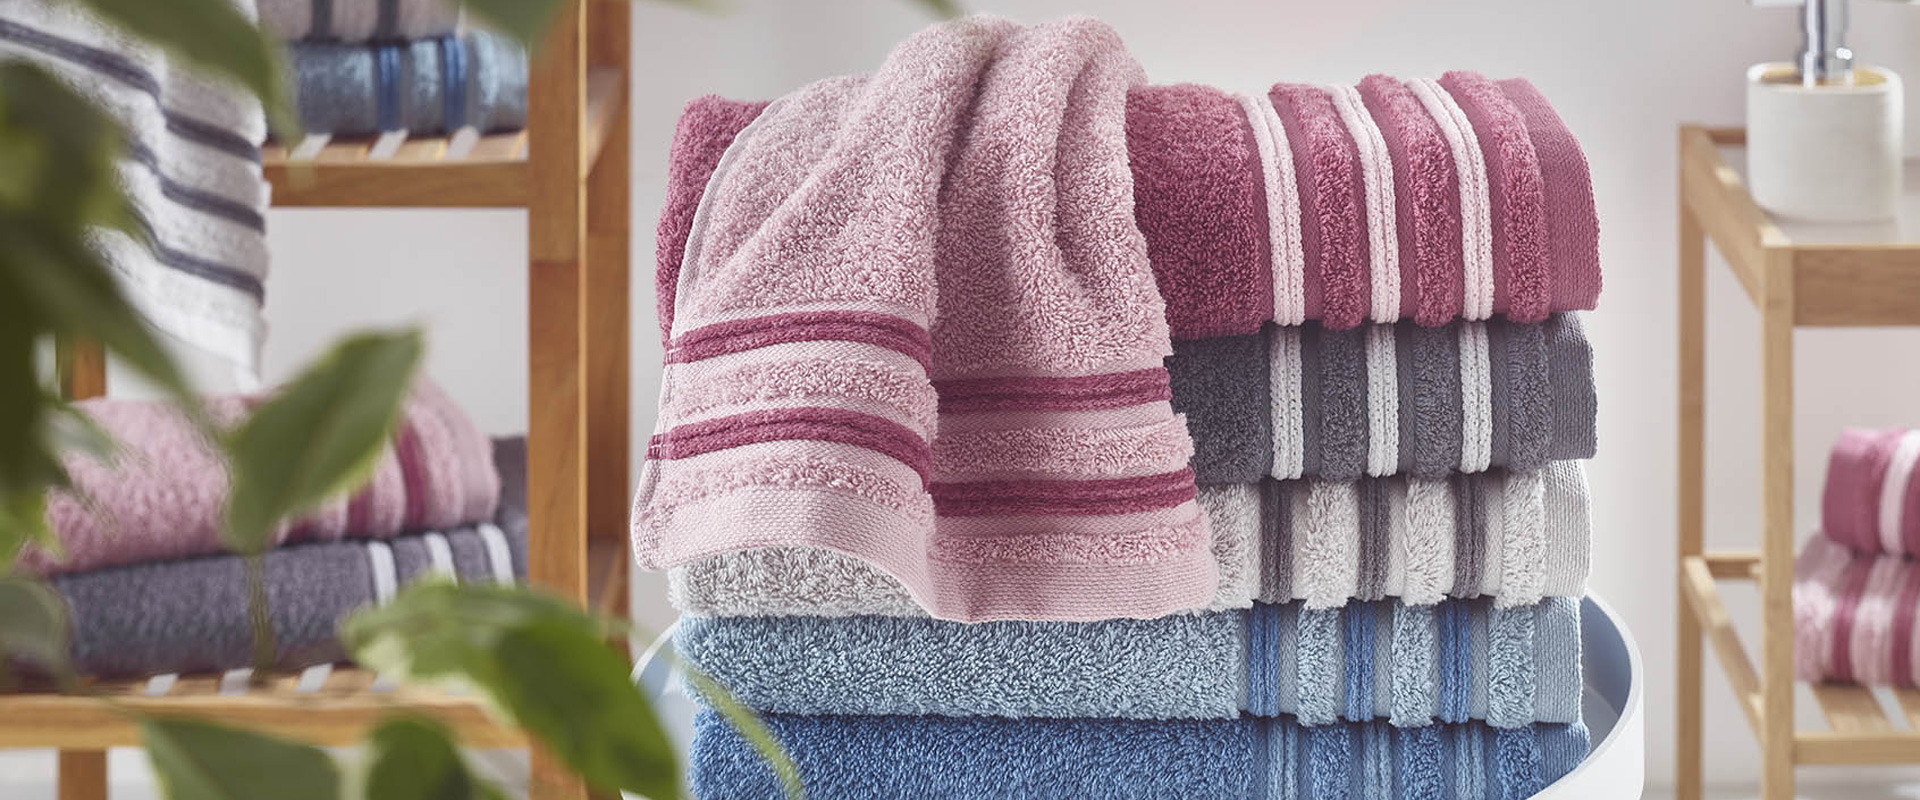 Por qué es importante el gramaje de las toallas para un hotel? – Itexa